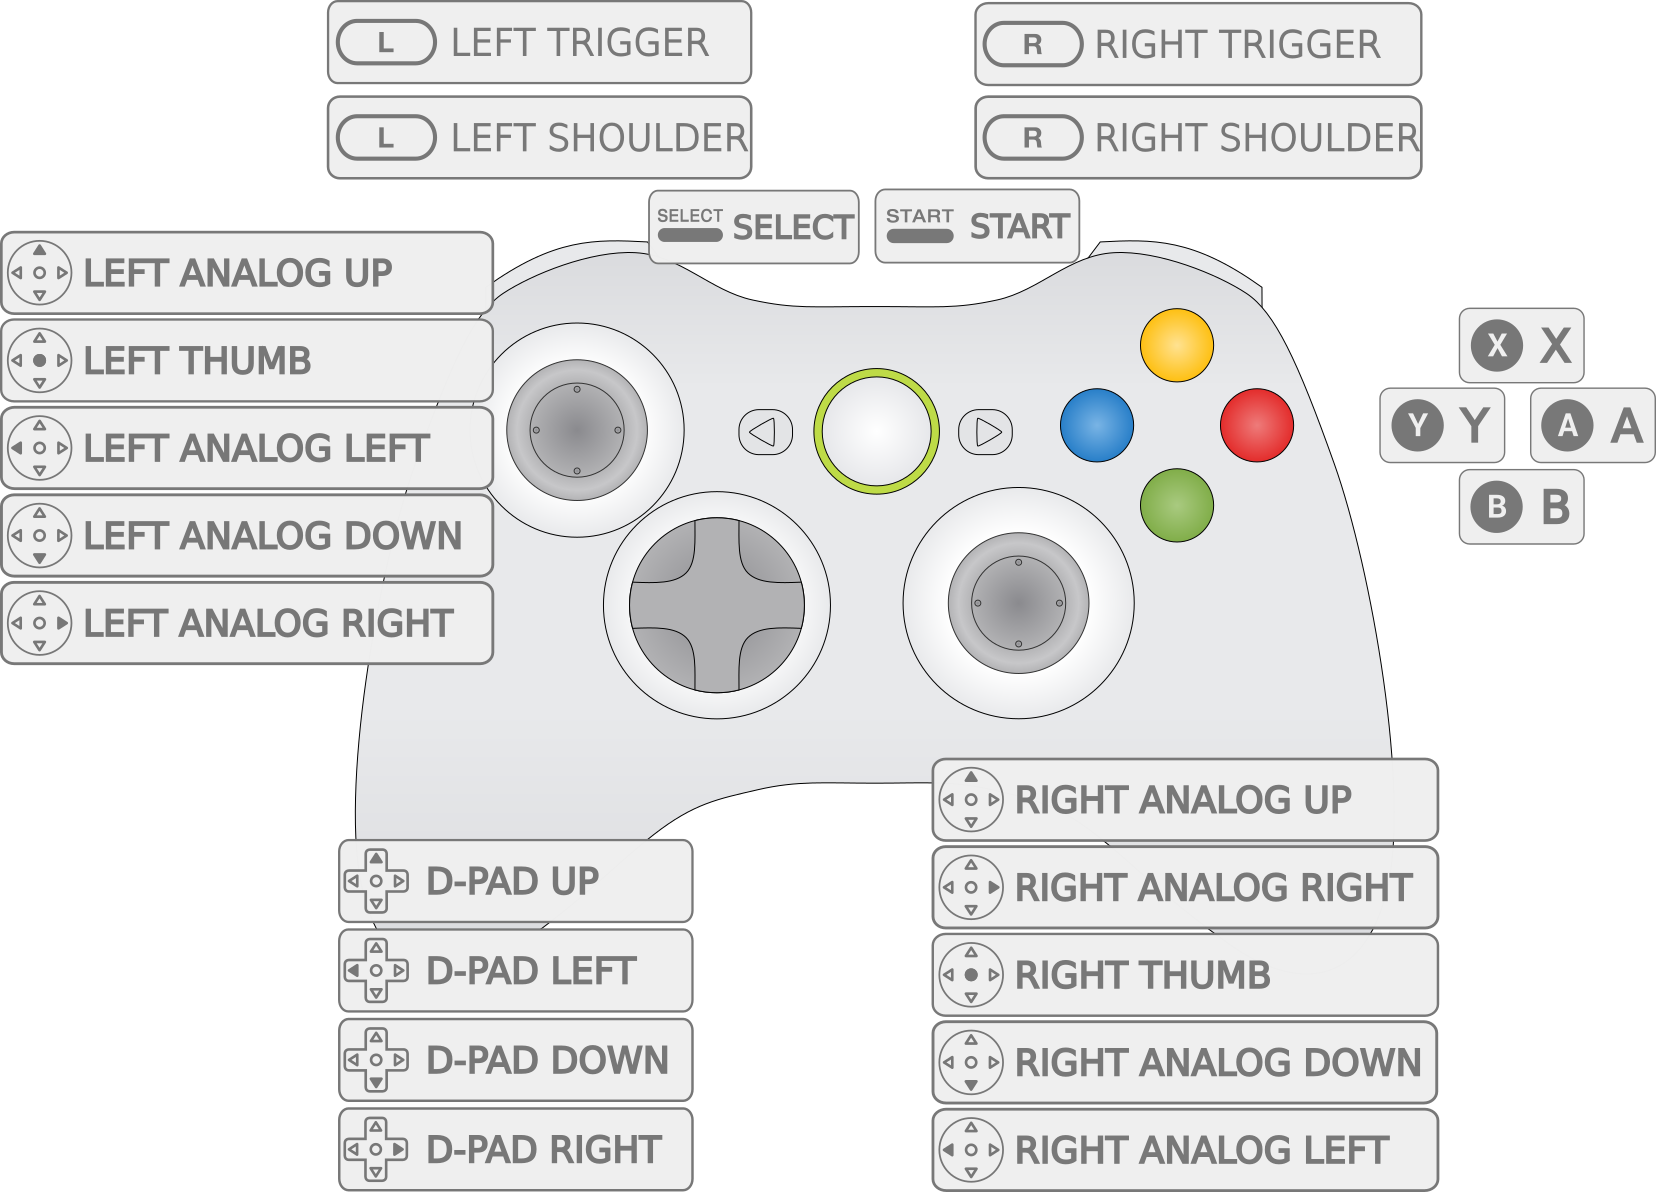 Как играть джойстиком xbox. Обозначение кнопок на геймпаде Xbox 360. Раскладка джойстика Xbox 360. Схема кнопок на геймпаде хбокс 360. Геймпад Xbox 360 Назначение кнопок.